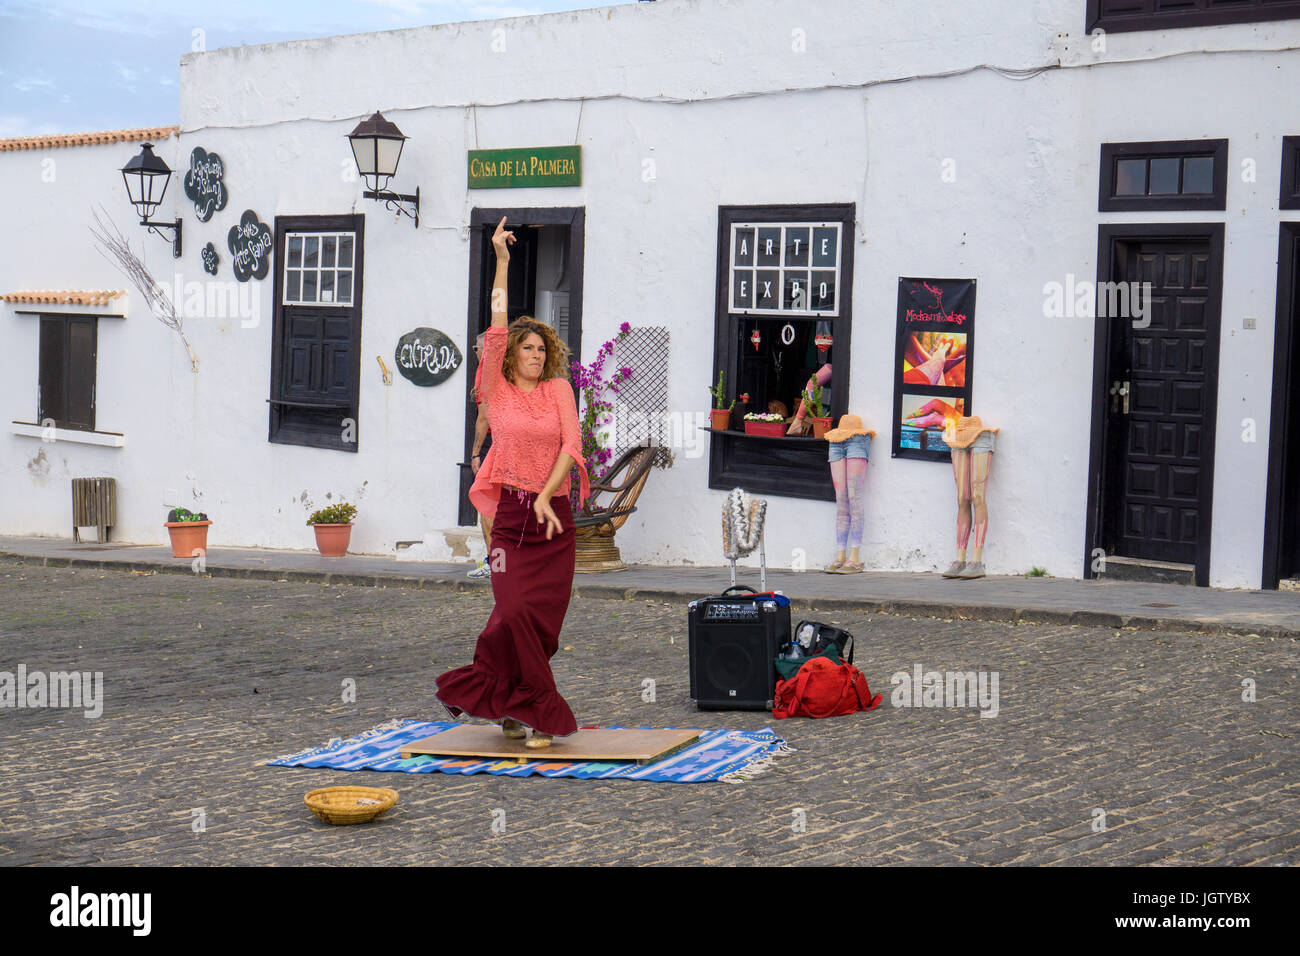 El bailarín de flamenco (mujer) bailando en la calle, domingo mercado semanal en Teguise, Lanzarote, Islas Canarias, Europa Foto de stock